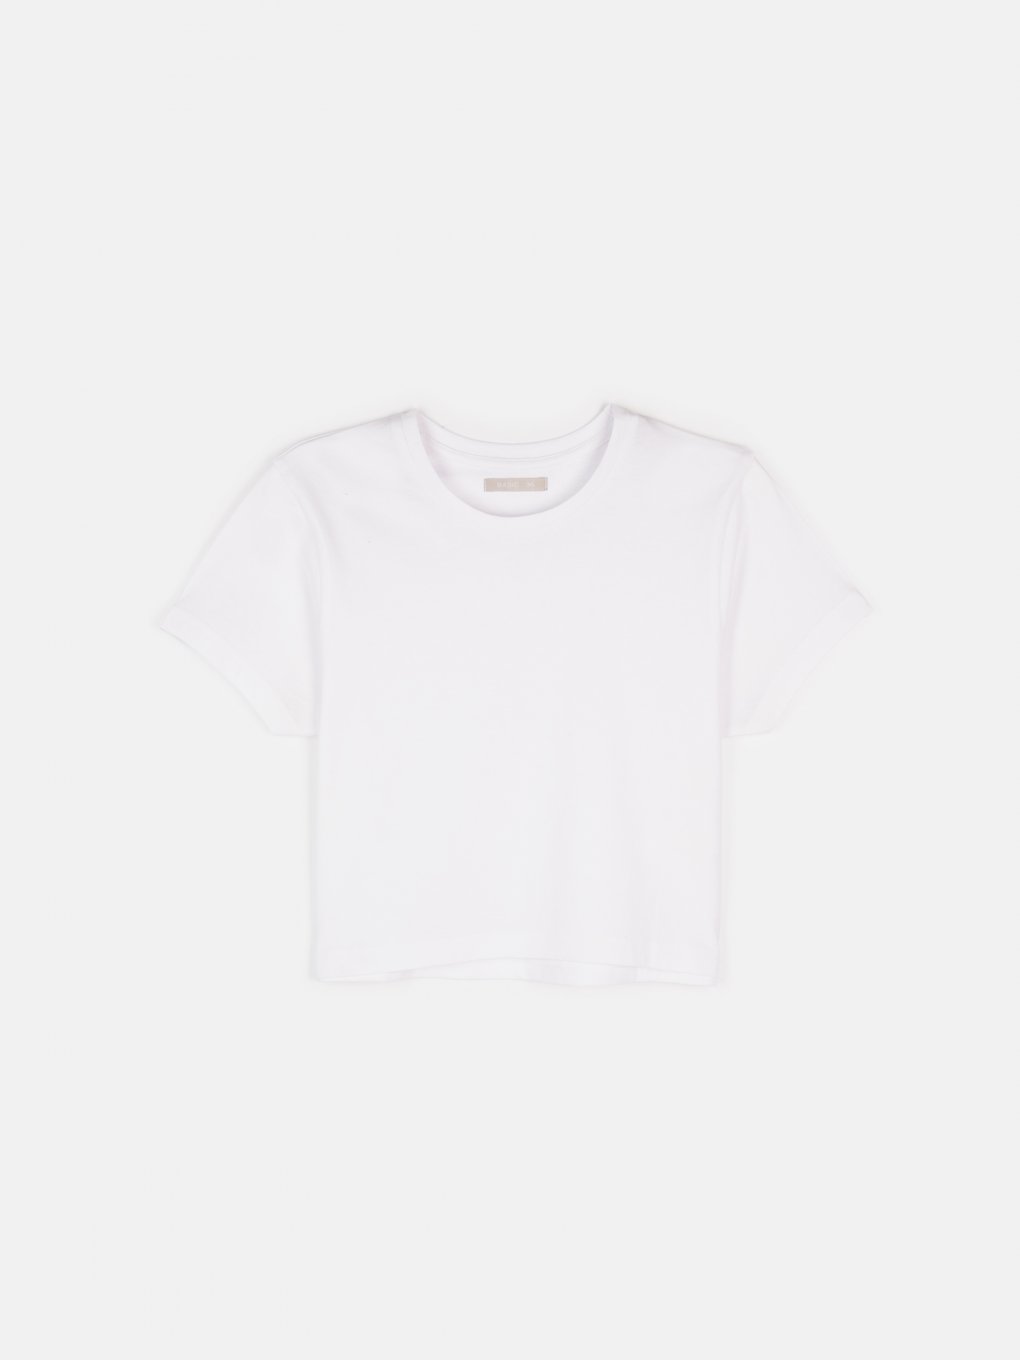 Základní basic krátké bavlněné tričko